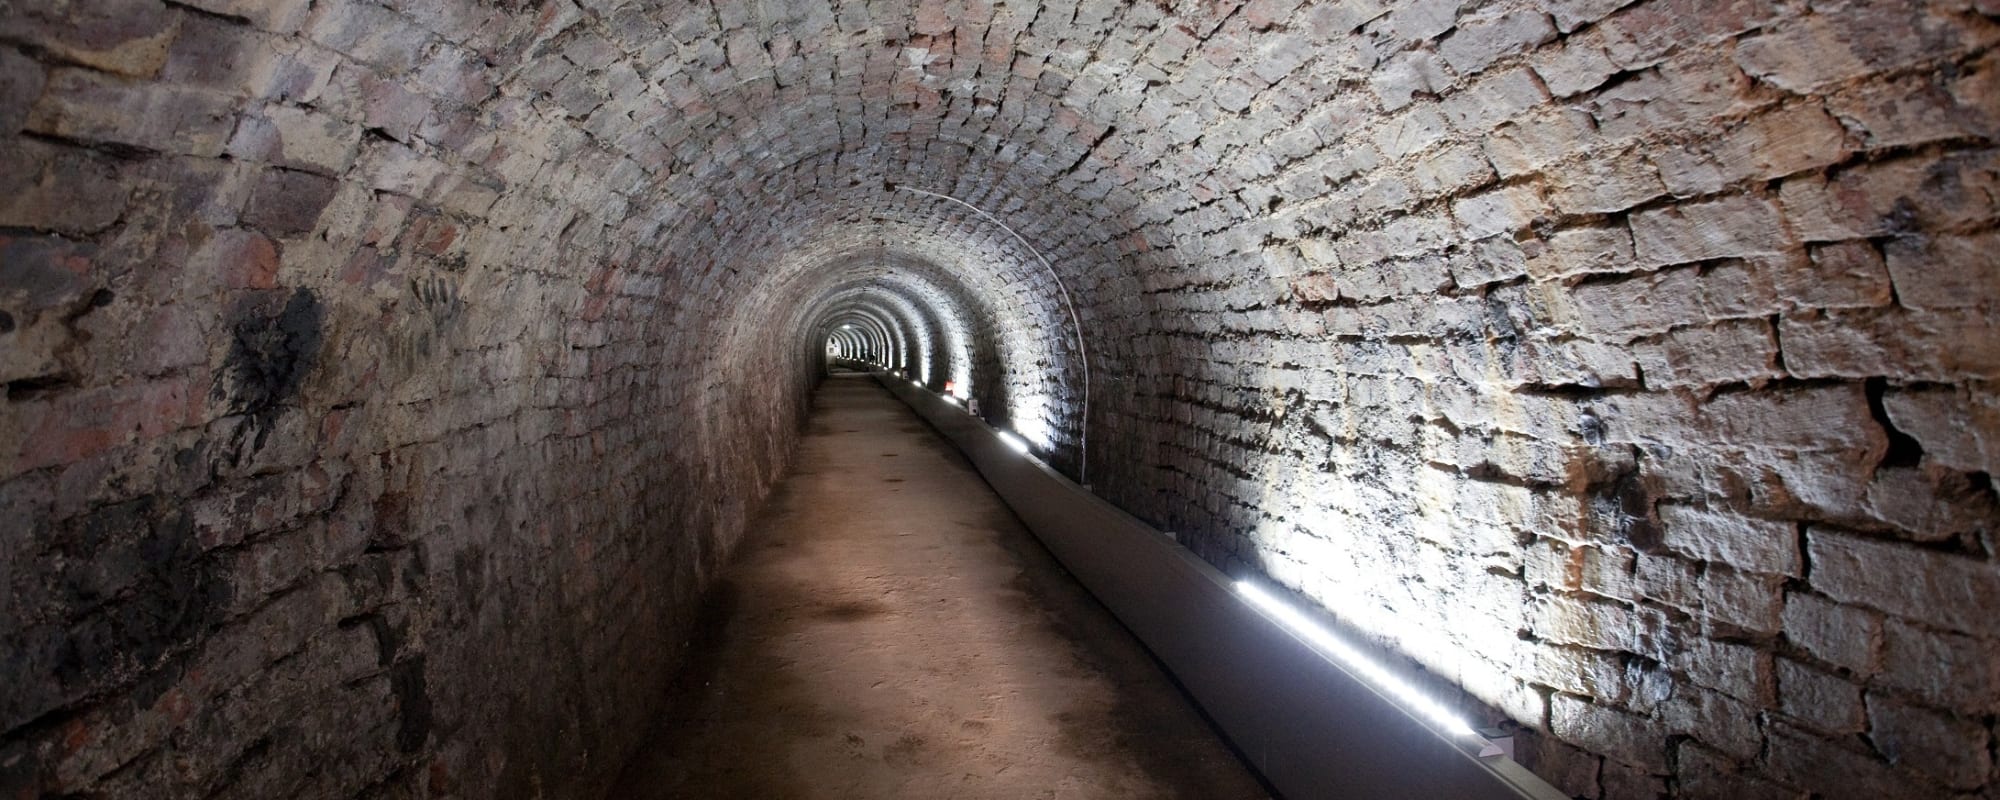 Inside the Victoria Tunnel, Newcastle